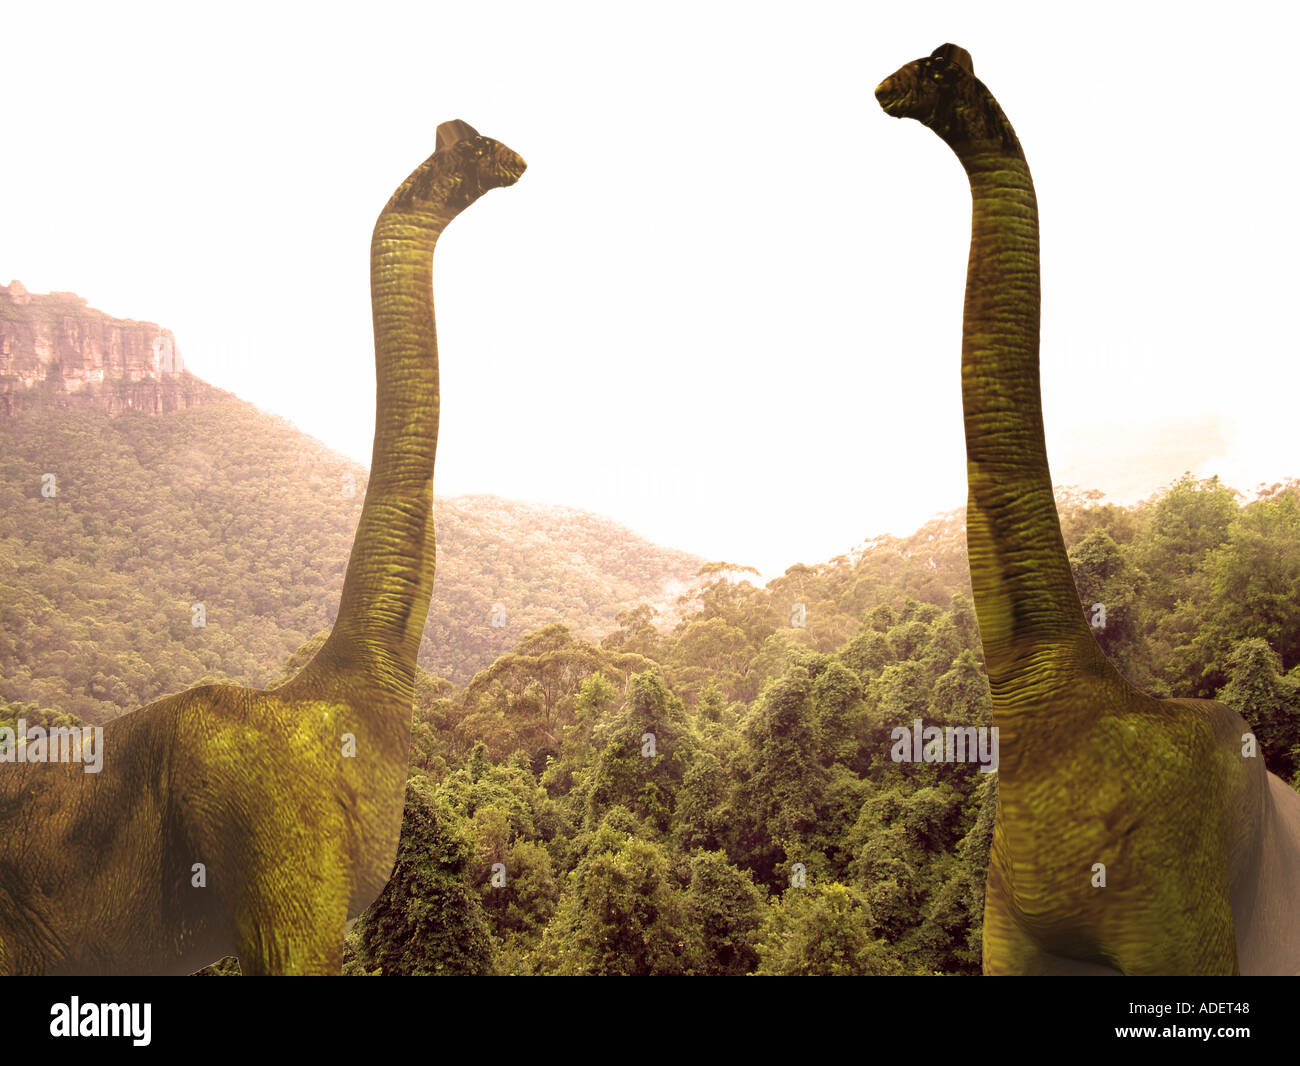 Dinosauro brachiosaurus la creatura più alto mai avere exsisted uno dei sauropods computer 3D illustrazione Foto Stock